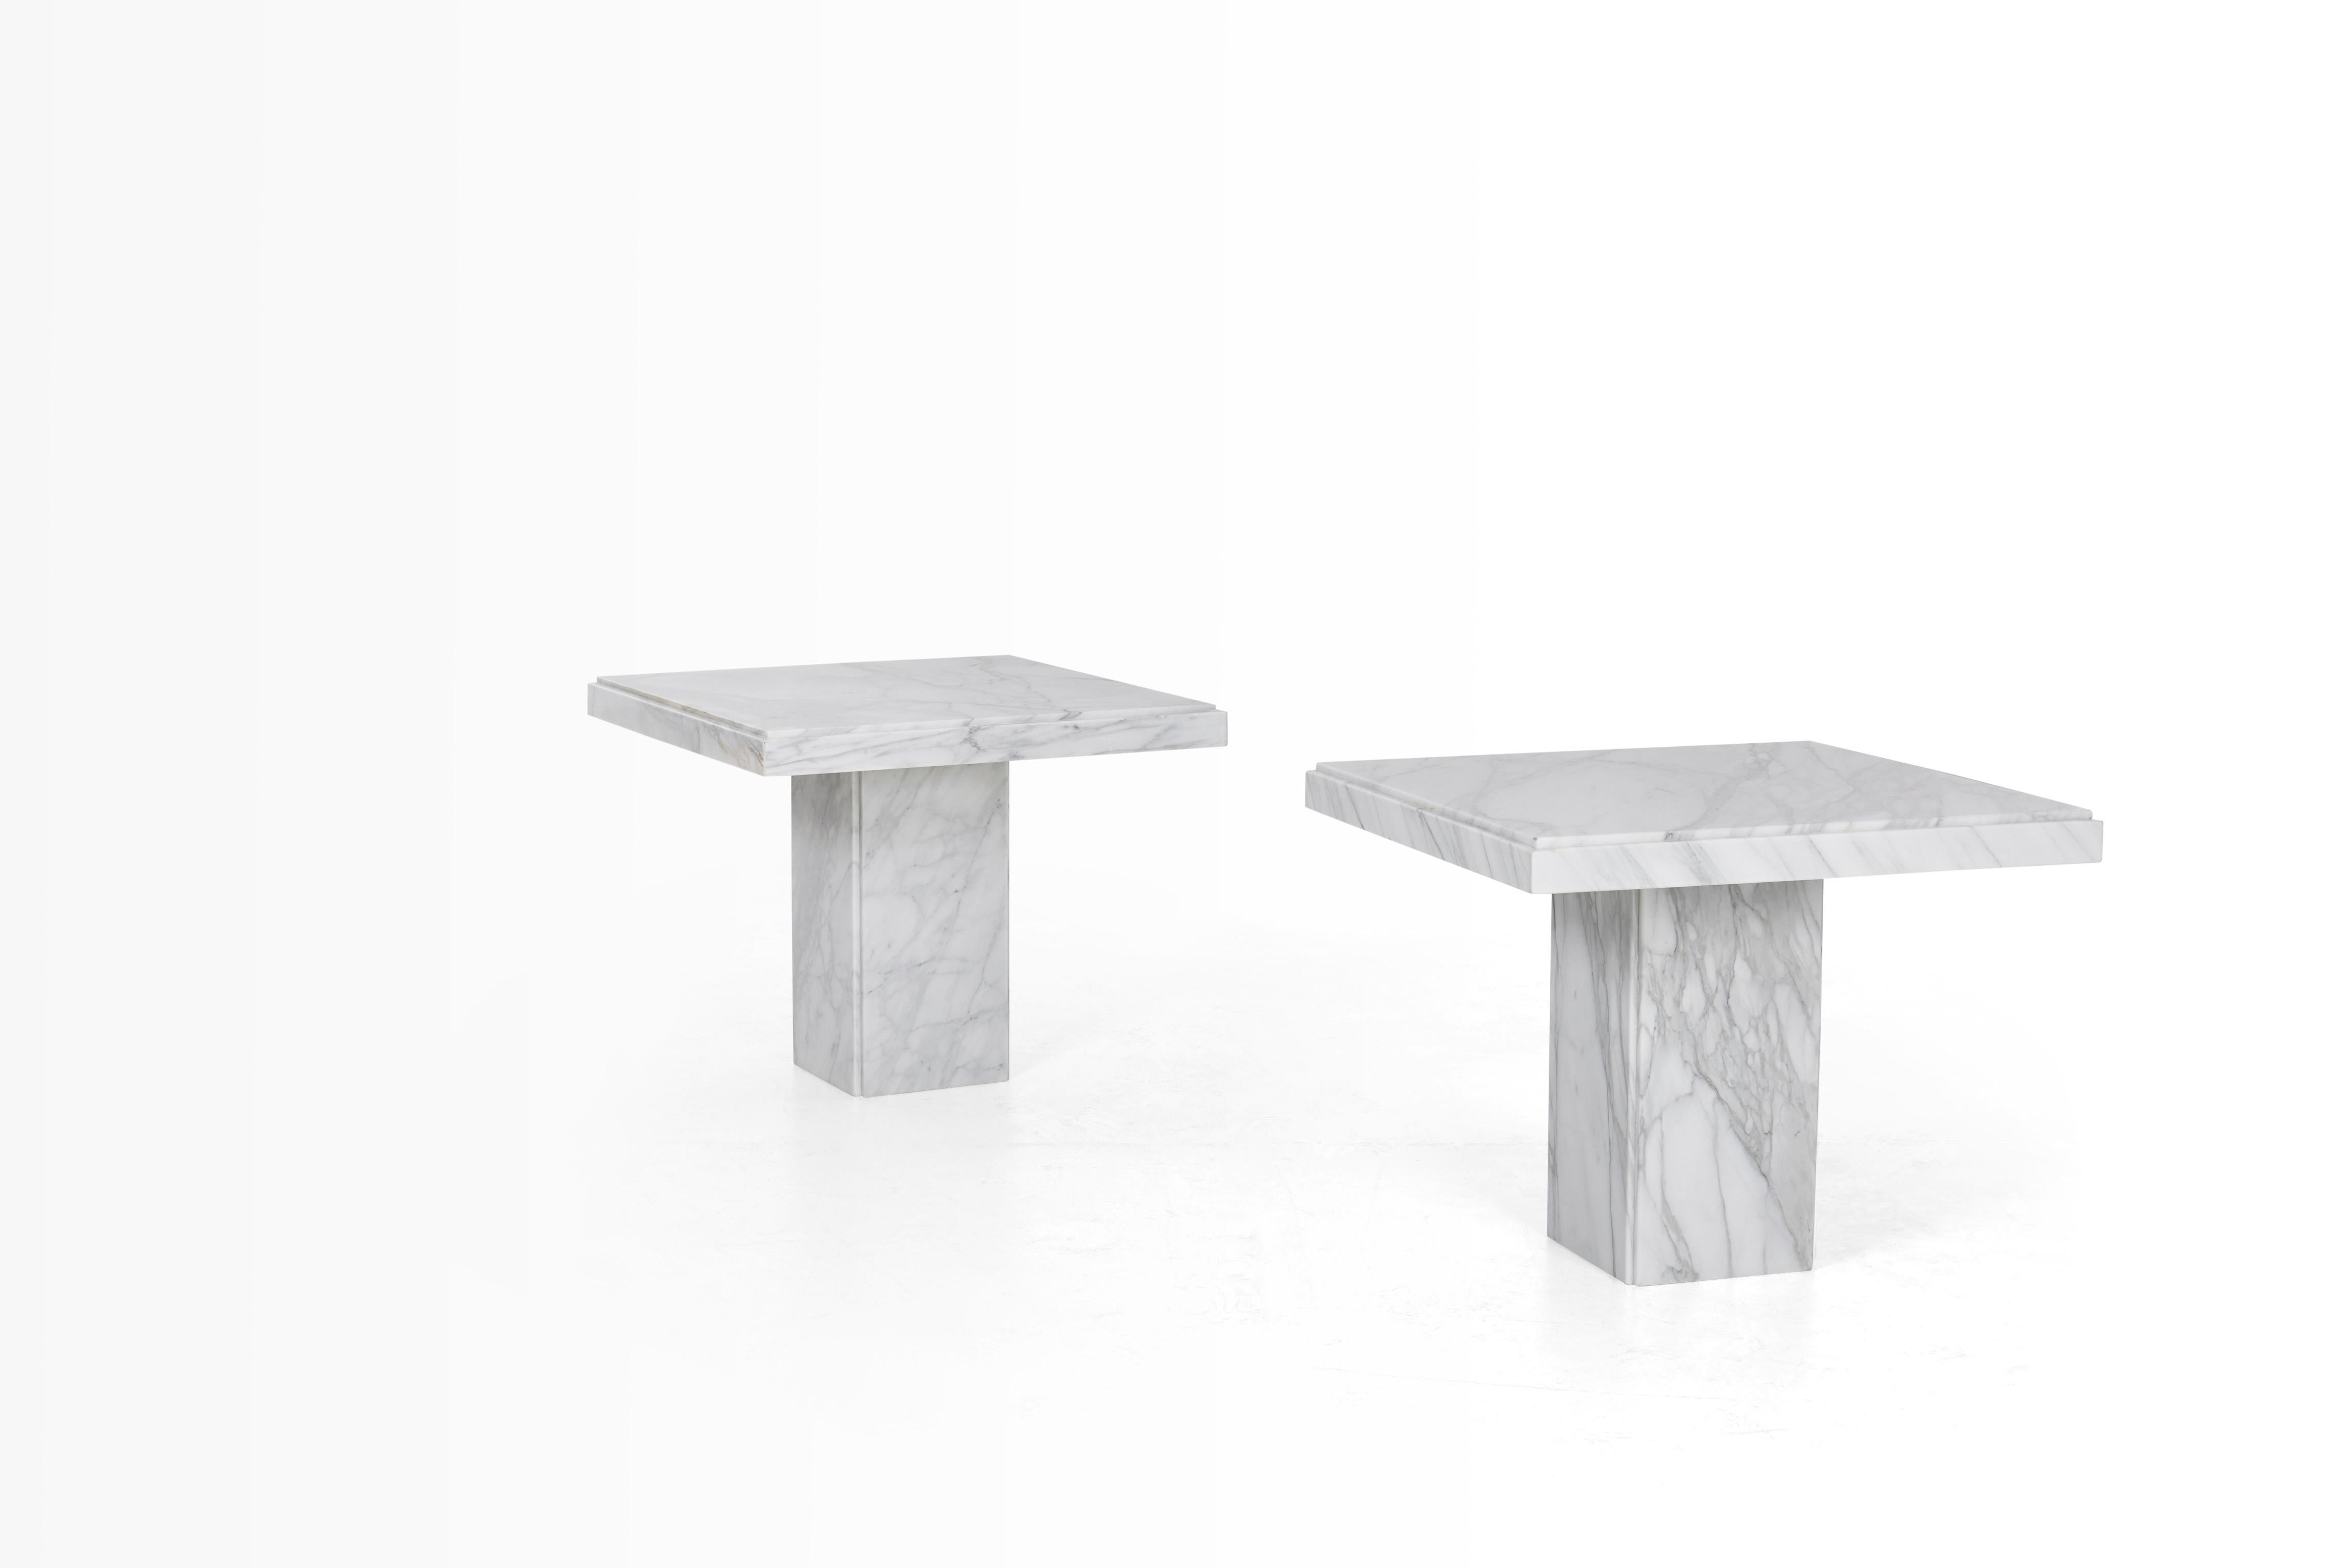 Italienischen Marmor Ende Tabellen, poliertem Carrara-Marmor mit Offset-Quadrat Kante Details, oben 2,5 